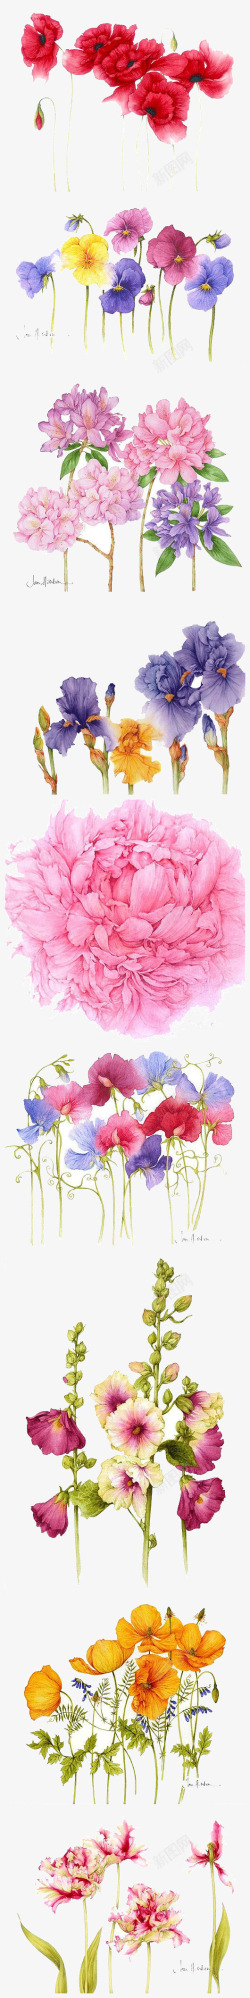 多种手绘水彩花卉装饰图案素材